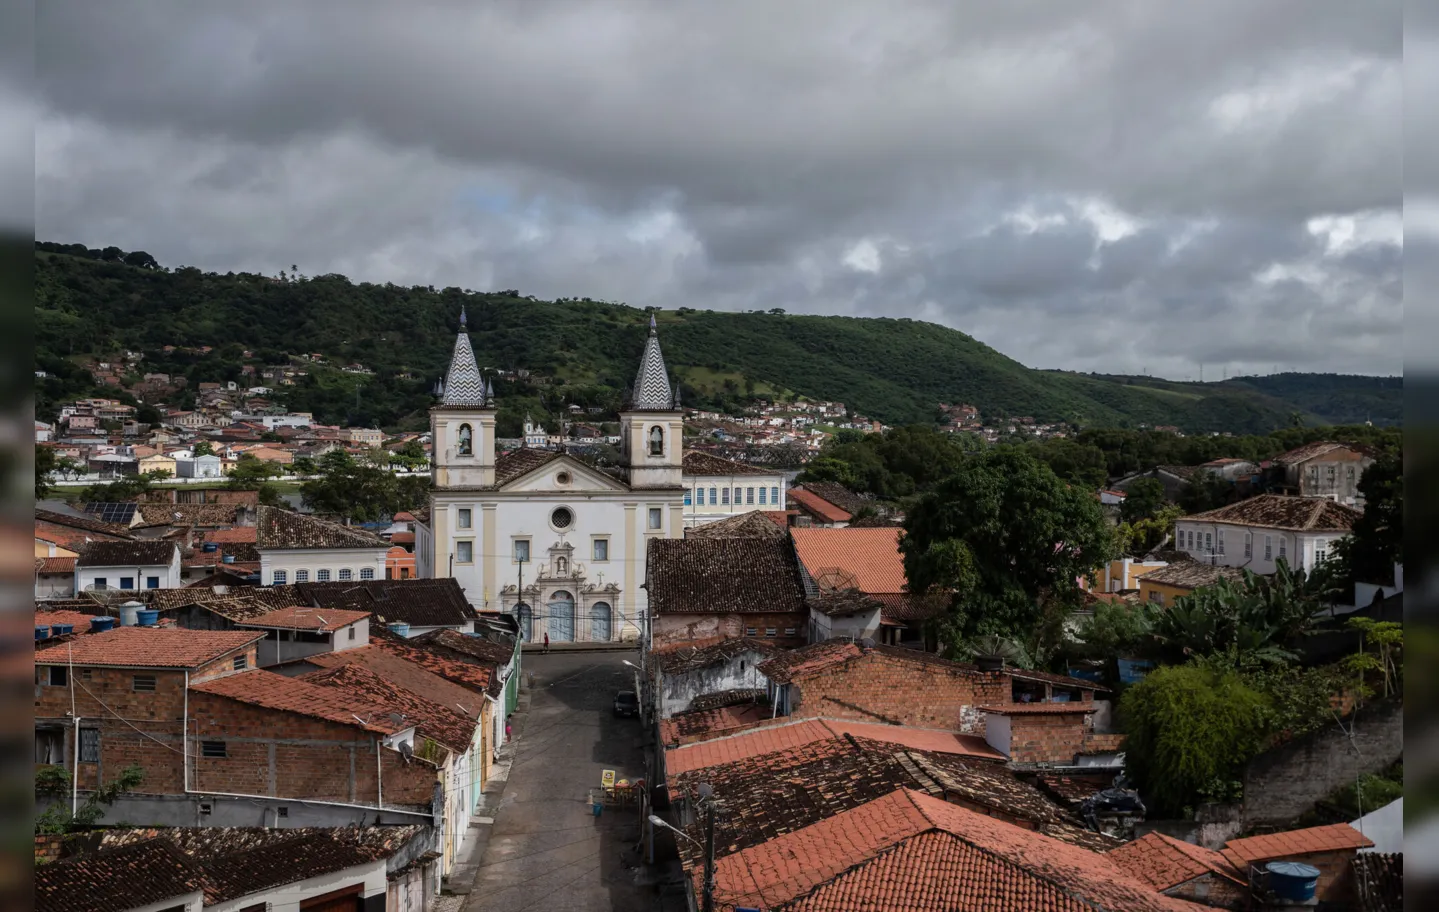 Vista de parte da cidade de Cachoeira, tendo a Igreja Matriz de Nossa Srª do Rosário como destaque